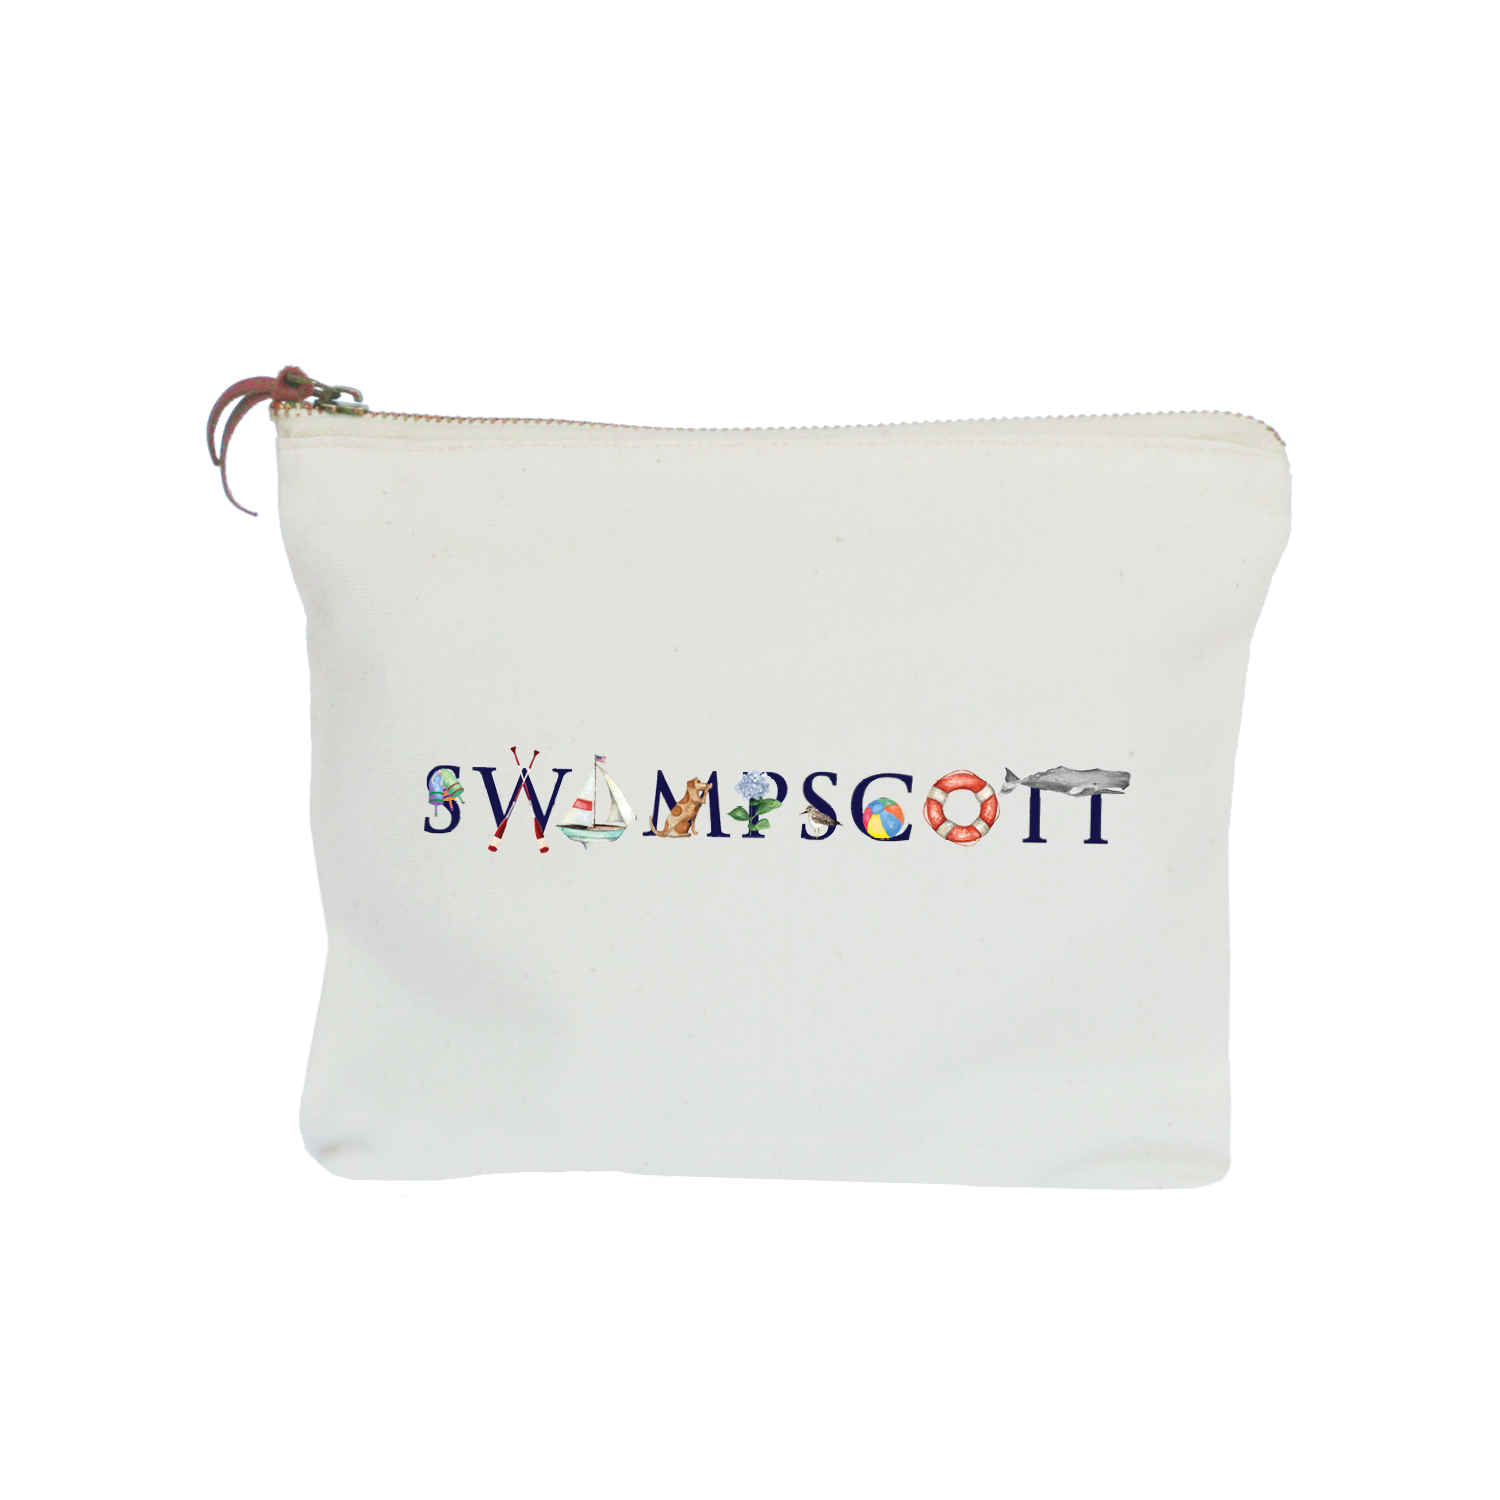 swampscott zipper pouch